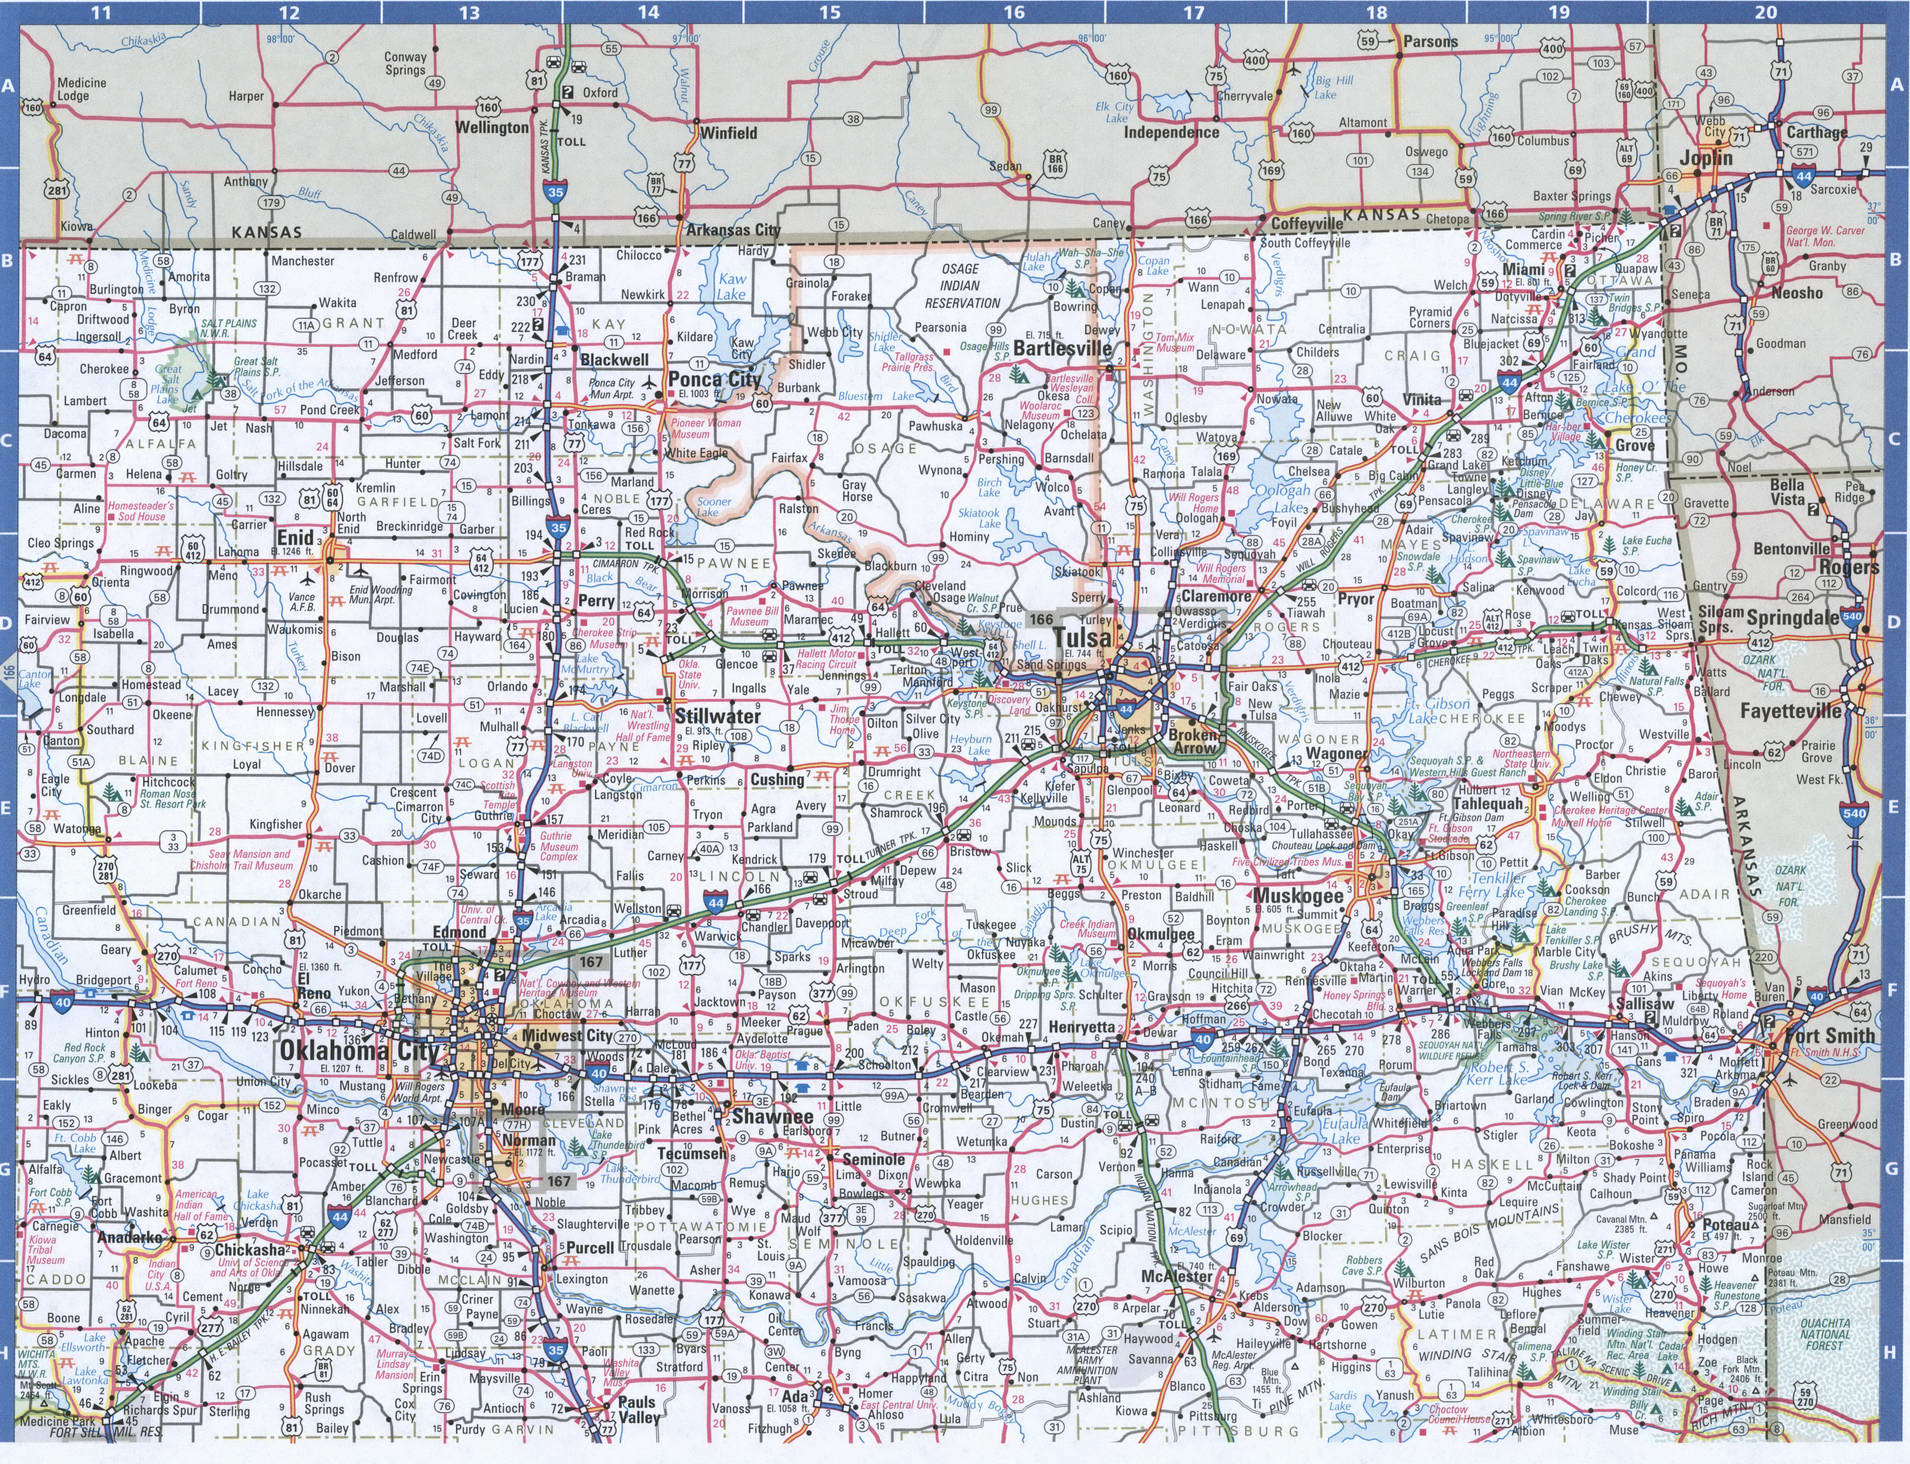 Oklahoma-stad niet gevonden op route-atlas